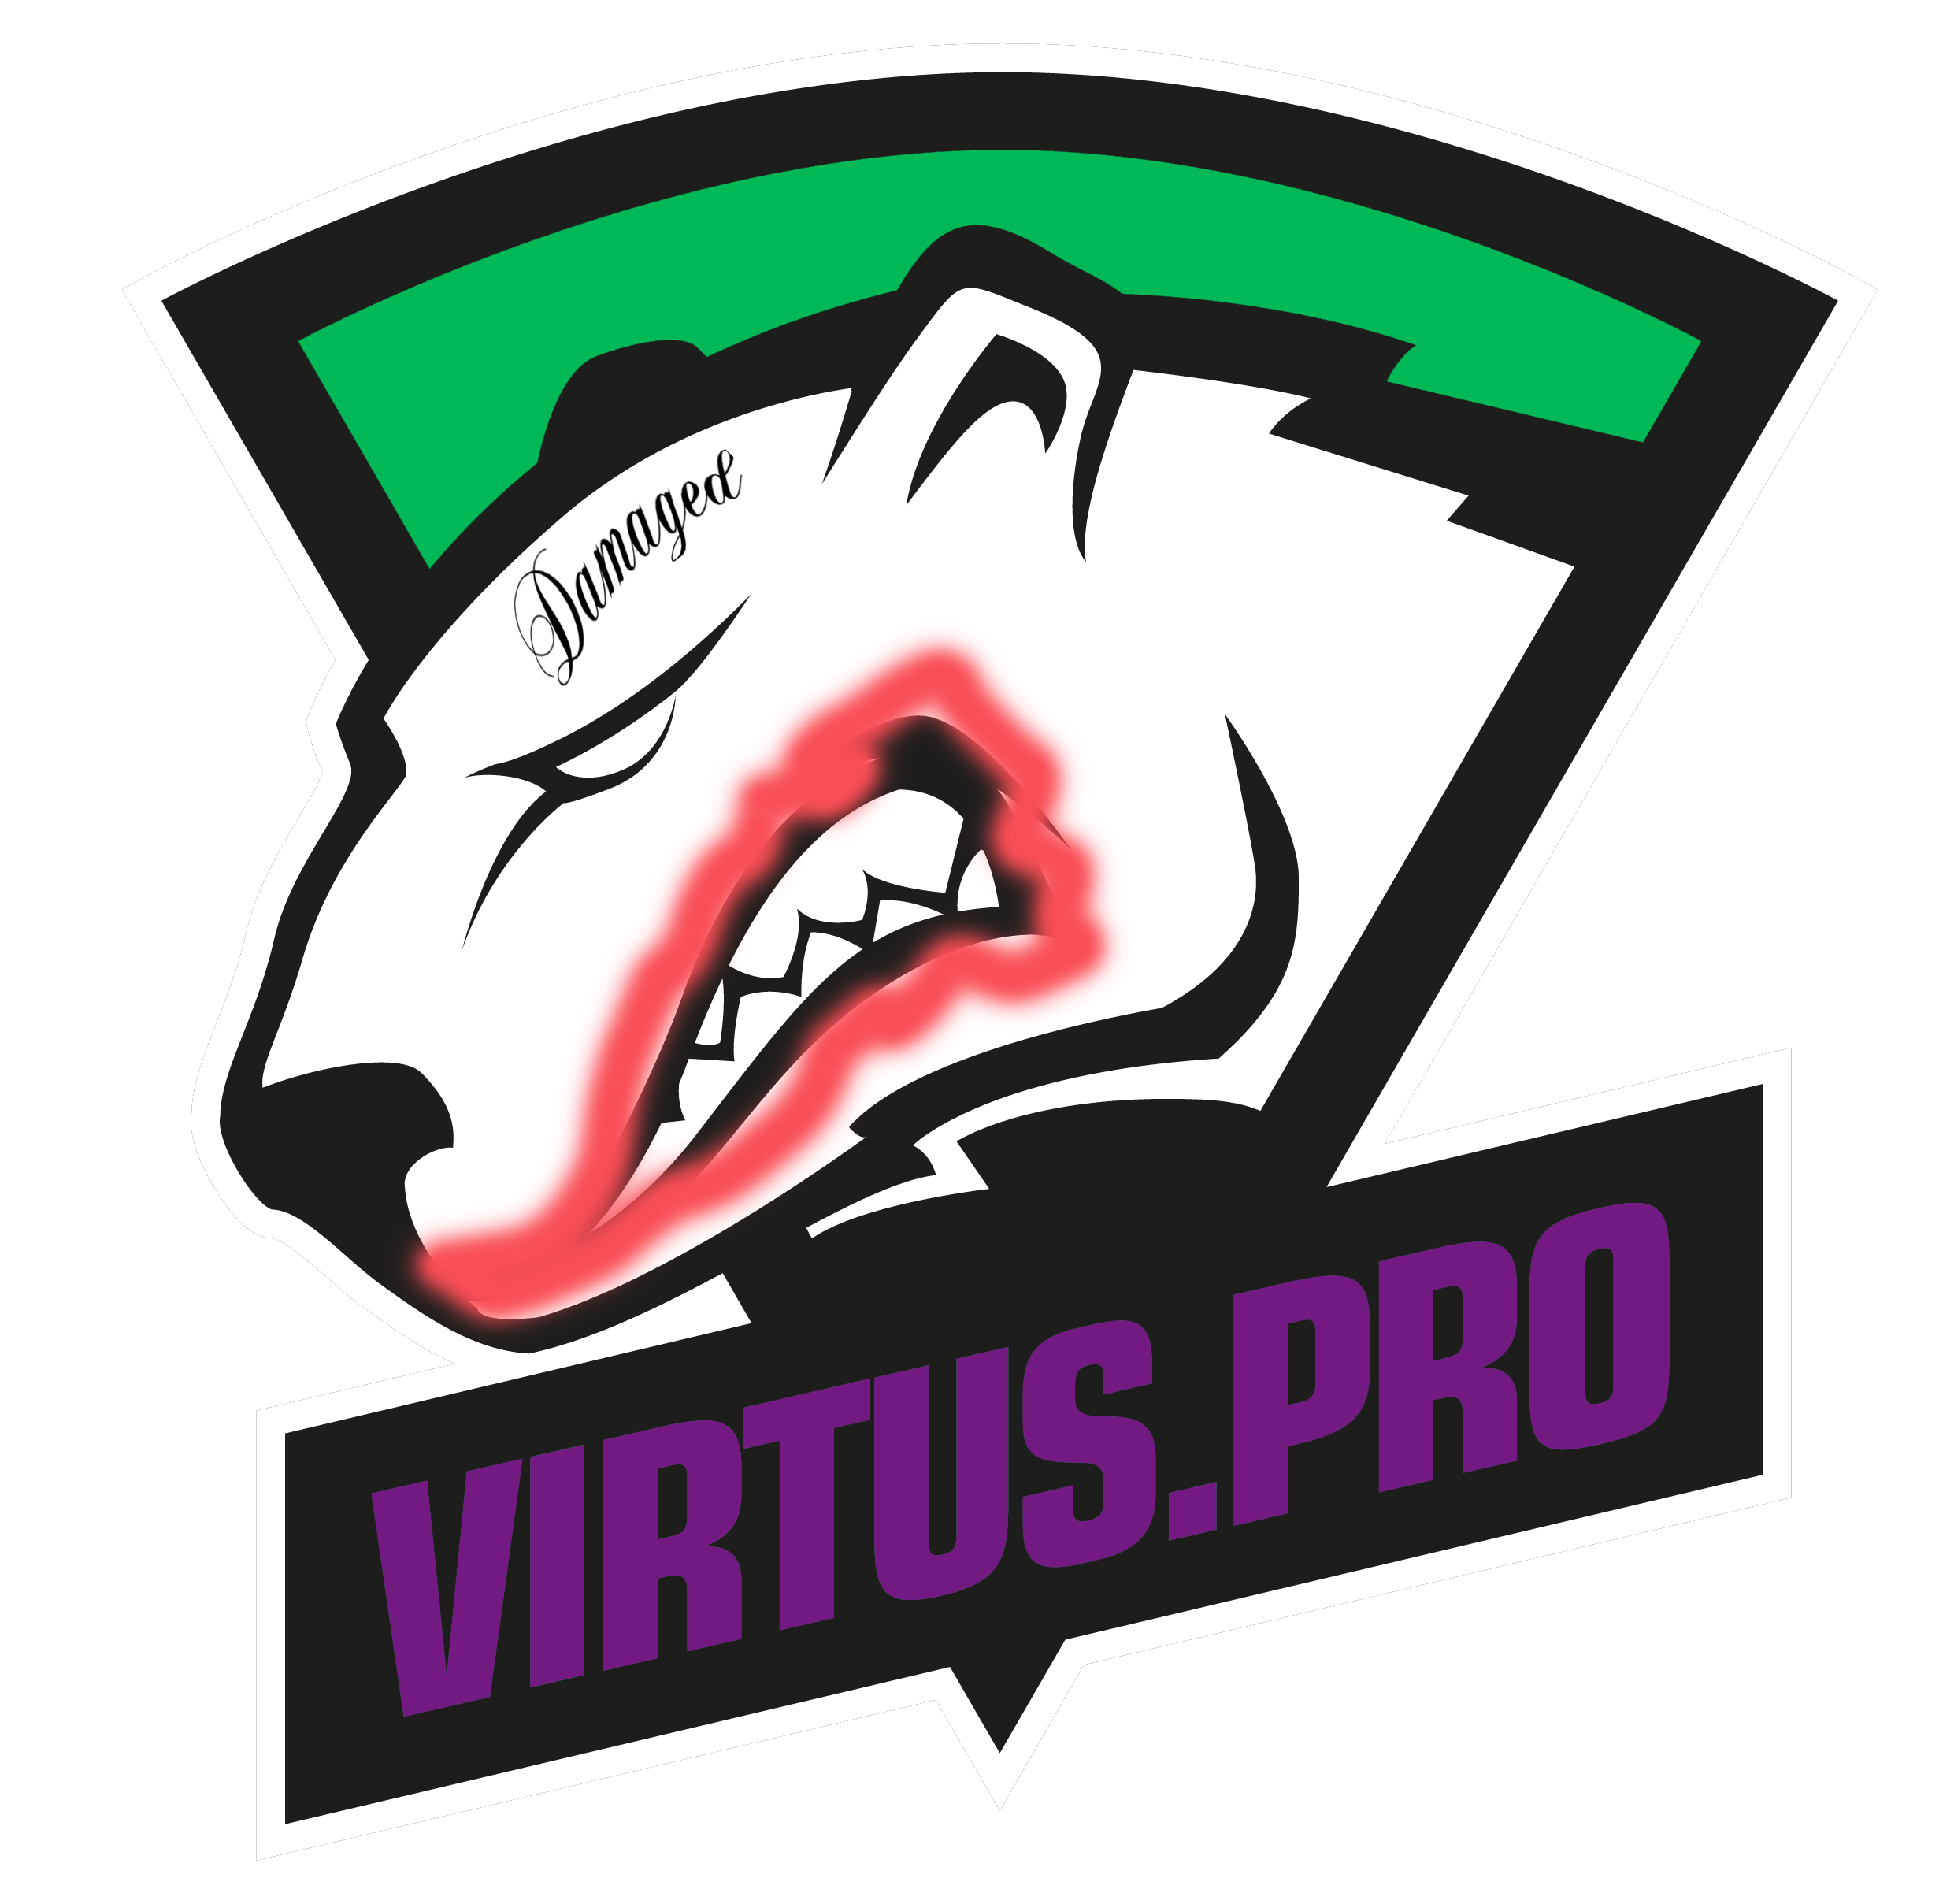 Pro Logo - I thought the new Virtus.Pro logo reminded me of something ...